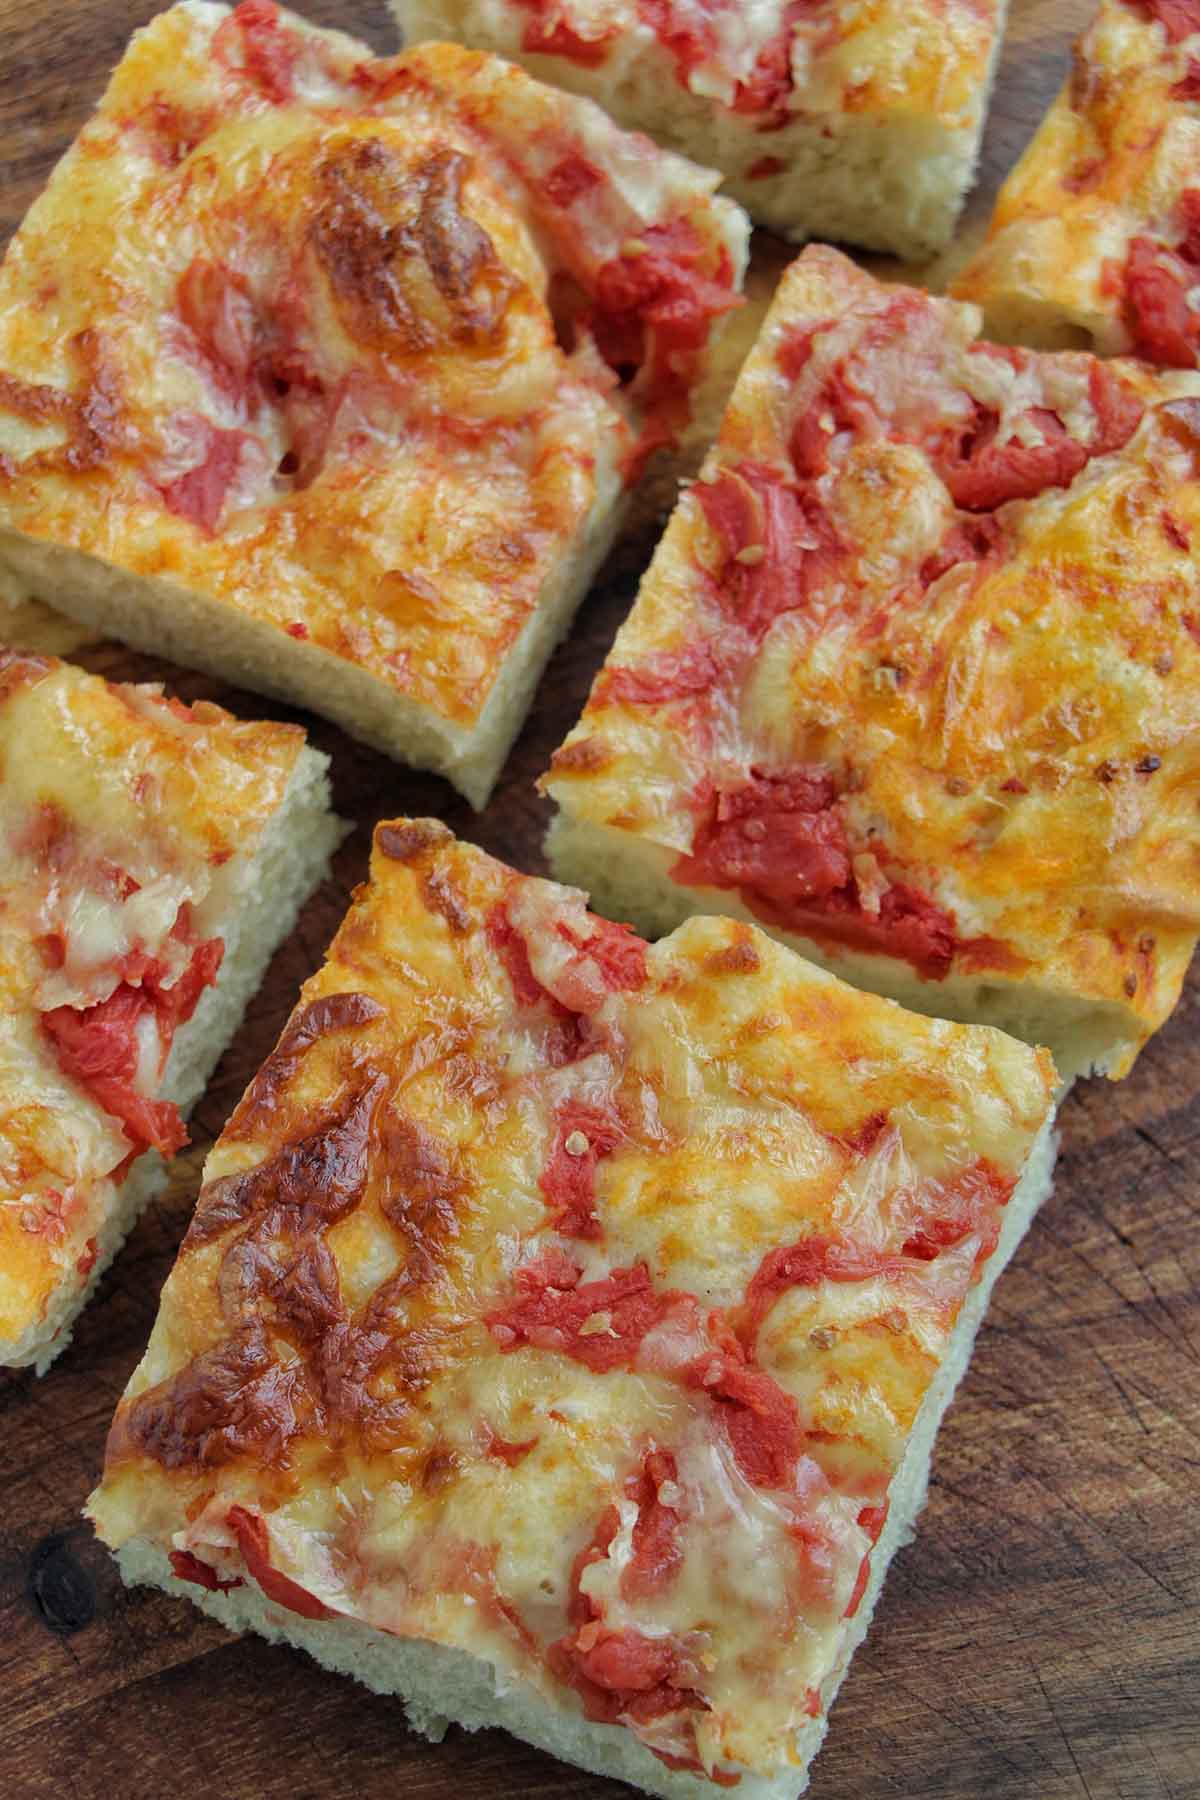 slices of cheese and tomato focaccia bread.